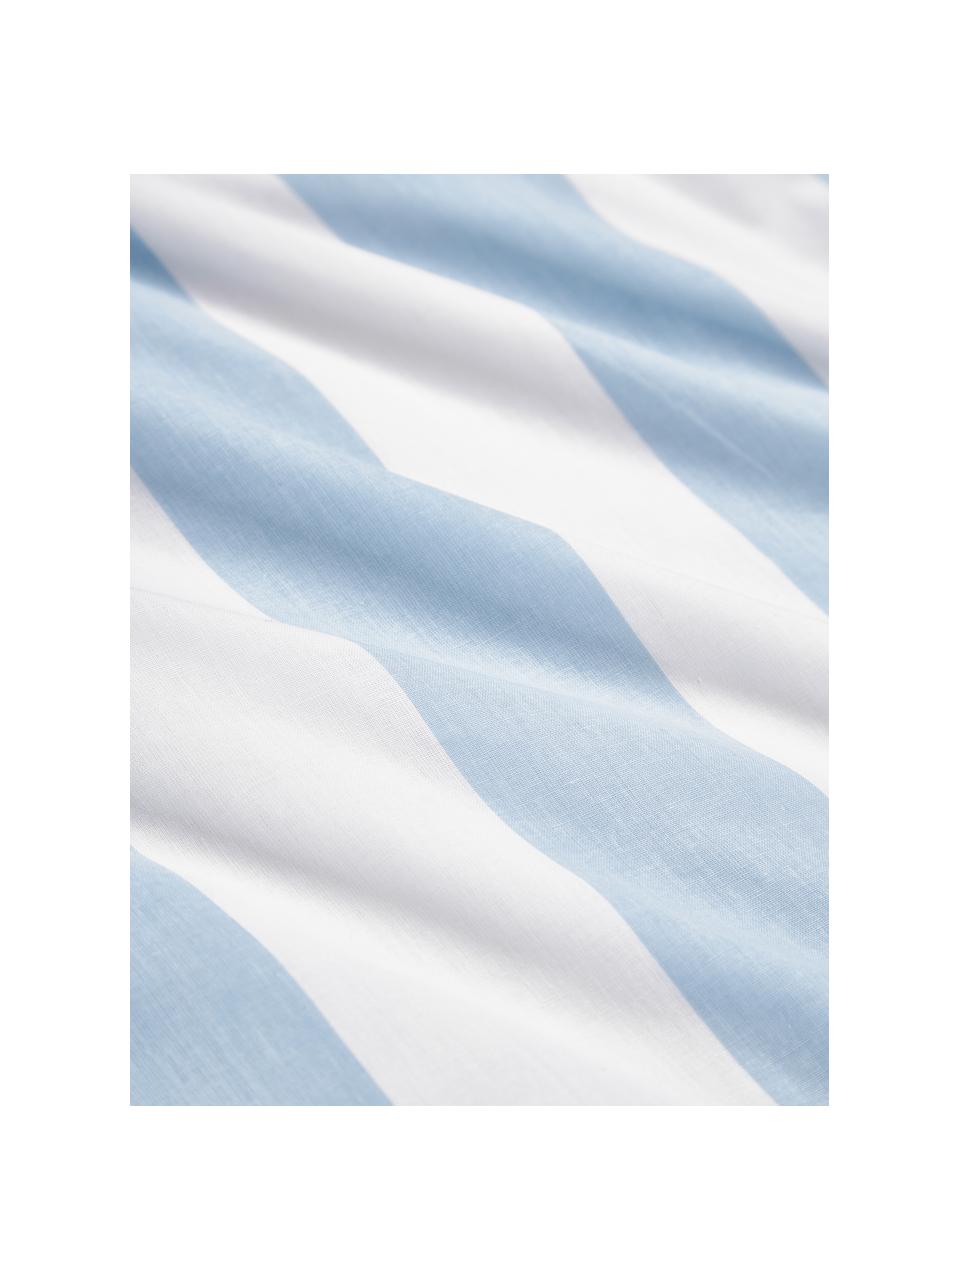 Copripiumino reversibile in cotone a righe azzurro/bianco Lorena, Azzurro/bianco, Larg. 200 x Lung. 200 cm